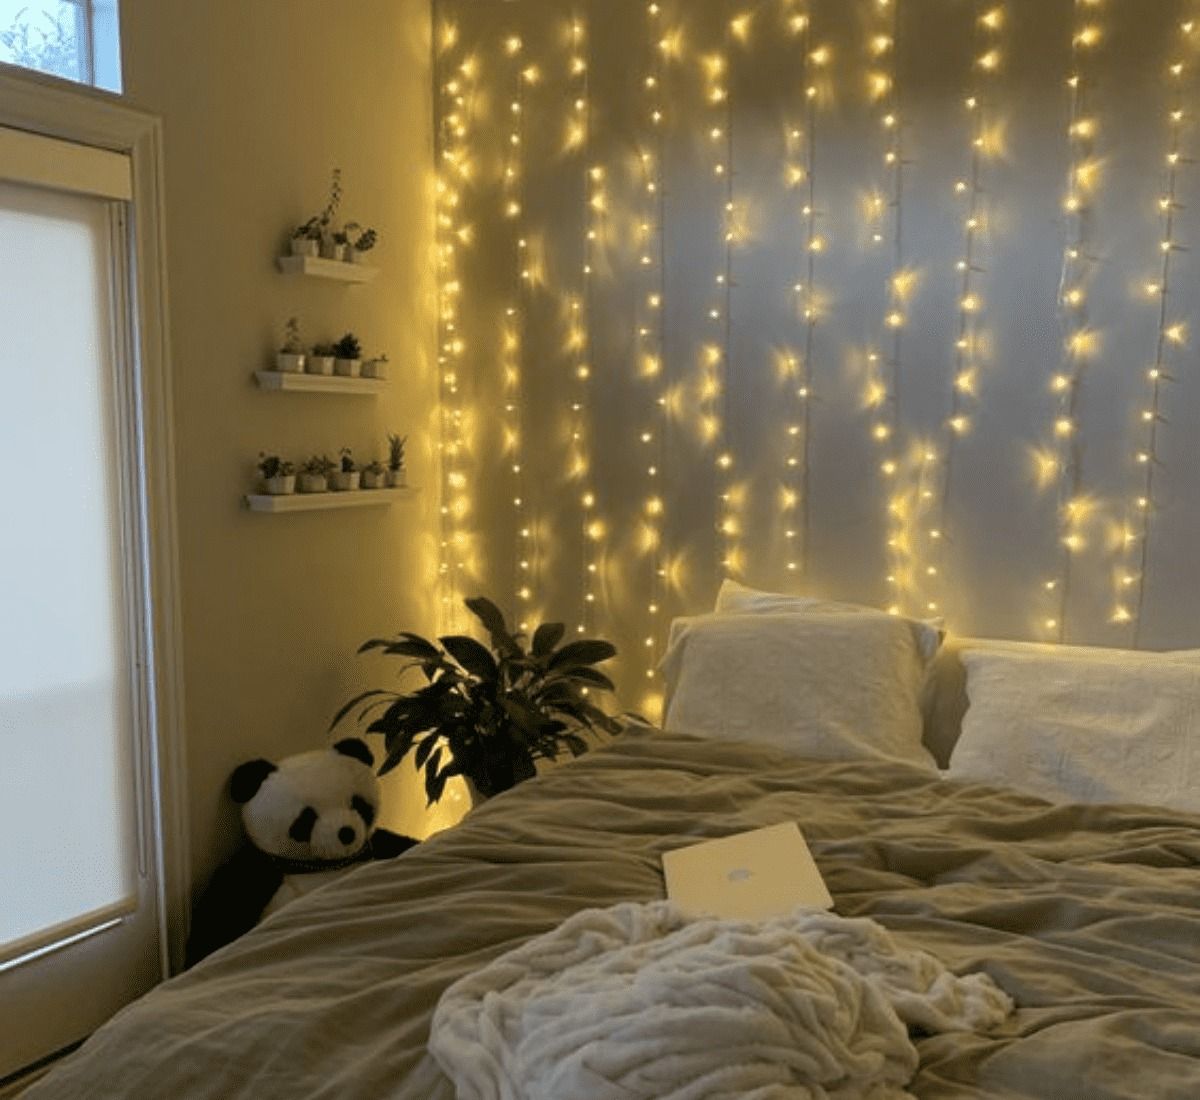 Bạn có thể sử dụng nhiều dây đèn để tạo hiệu ứng bầu trời đêm tuyệt đẹp cho phòng ngủ